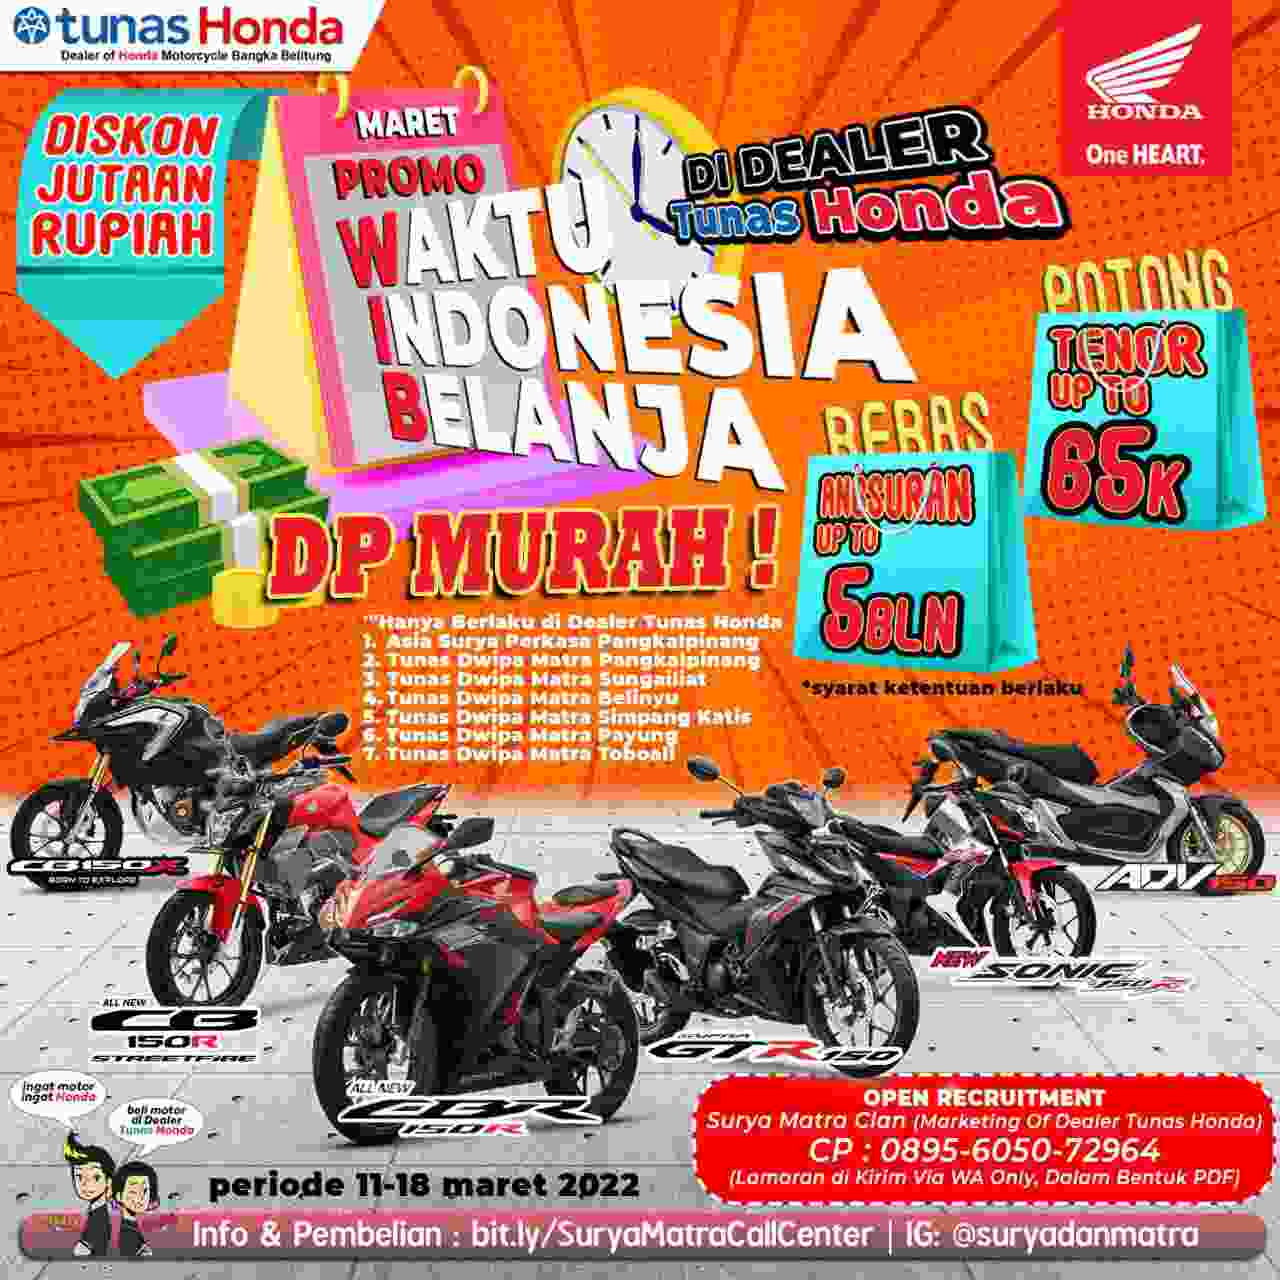 Honda Promo Waktu Indonesia Belanja